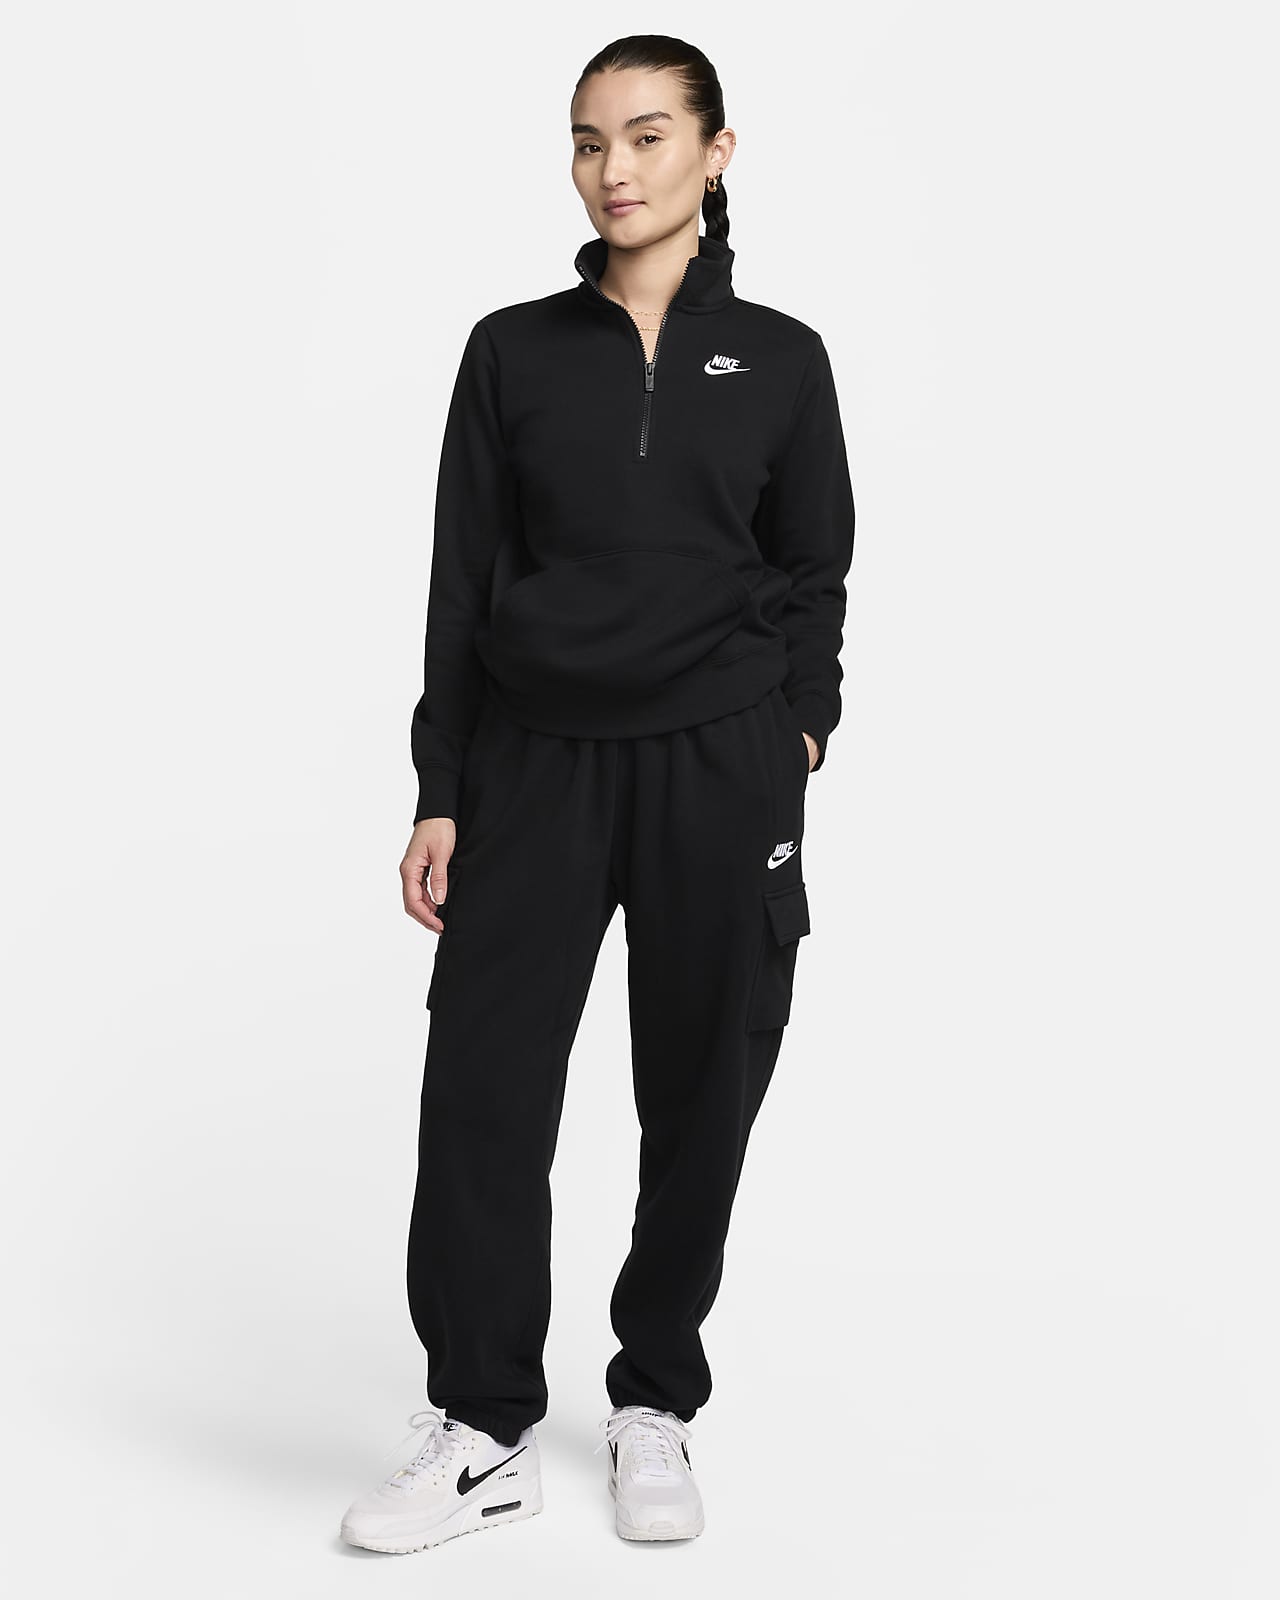 Nike Club Sweatsuit Package - Women's - Atlantic Sportswear